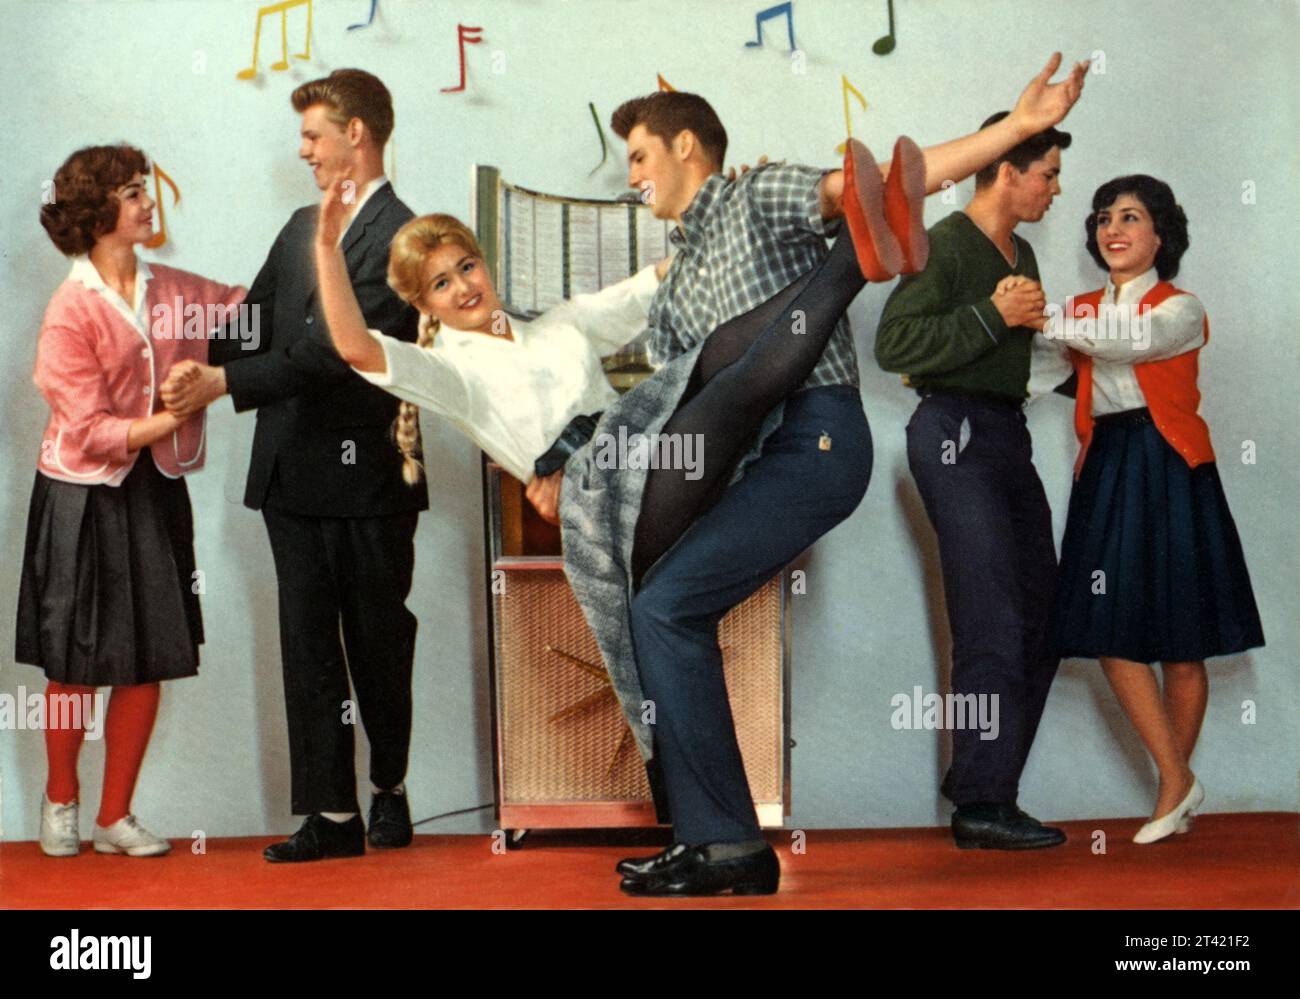 1958 CA, WESTDEUTSCHLAND : deutsche Postkarte in Real Taste of FITIES YEARS , mit TEENAGERN in modernem Geschmack von ROCK'n ROLL HAPPY DAYS AGE gekleidet , tanzen sie akrobatisch um eine Jukebox . Unbekannter Fotograf. - GESCHICHTE - FOTO STORICHE - TEENAGER - MODA AMERICANA - AMERIKANISCHE MODE - ANNI CINQANTA - 50ER - 50ER - 1950ER - DESIGN - POP - JUKE-BOX - DONNA - FRAU - RAGAZZE - RAGAZZI - JUNGEN - MÄDCHEN - FRAUEN - PANTALONE - STILE - STYLE - BLONDINE - SUMMER JAMBOREE - MUSICA - MUSIK - MODERNO - MODERN - ROCK'A BILLY - TANZ - DANZA ACROBATICA - BALLO - TANZ - PARTY - FESTA - ALLE Stockfoto